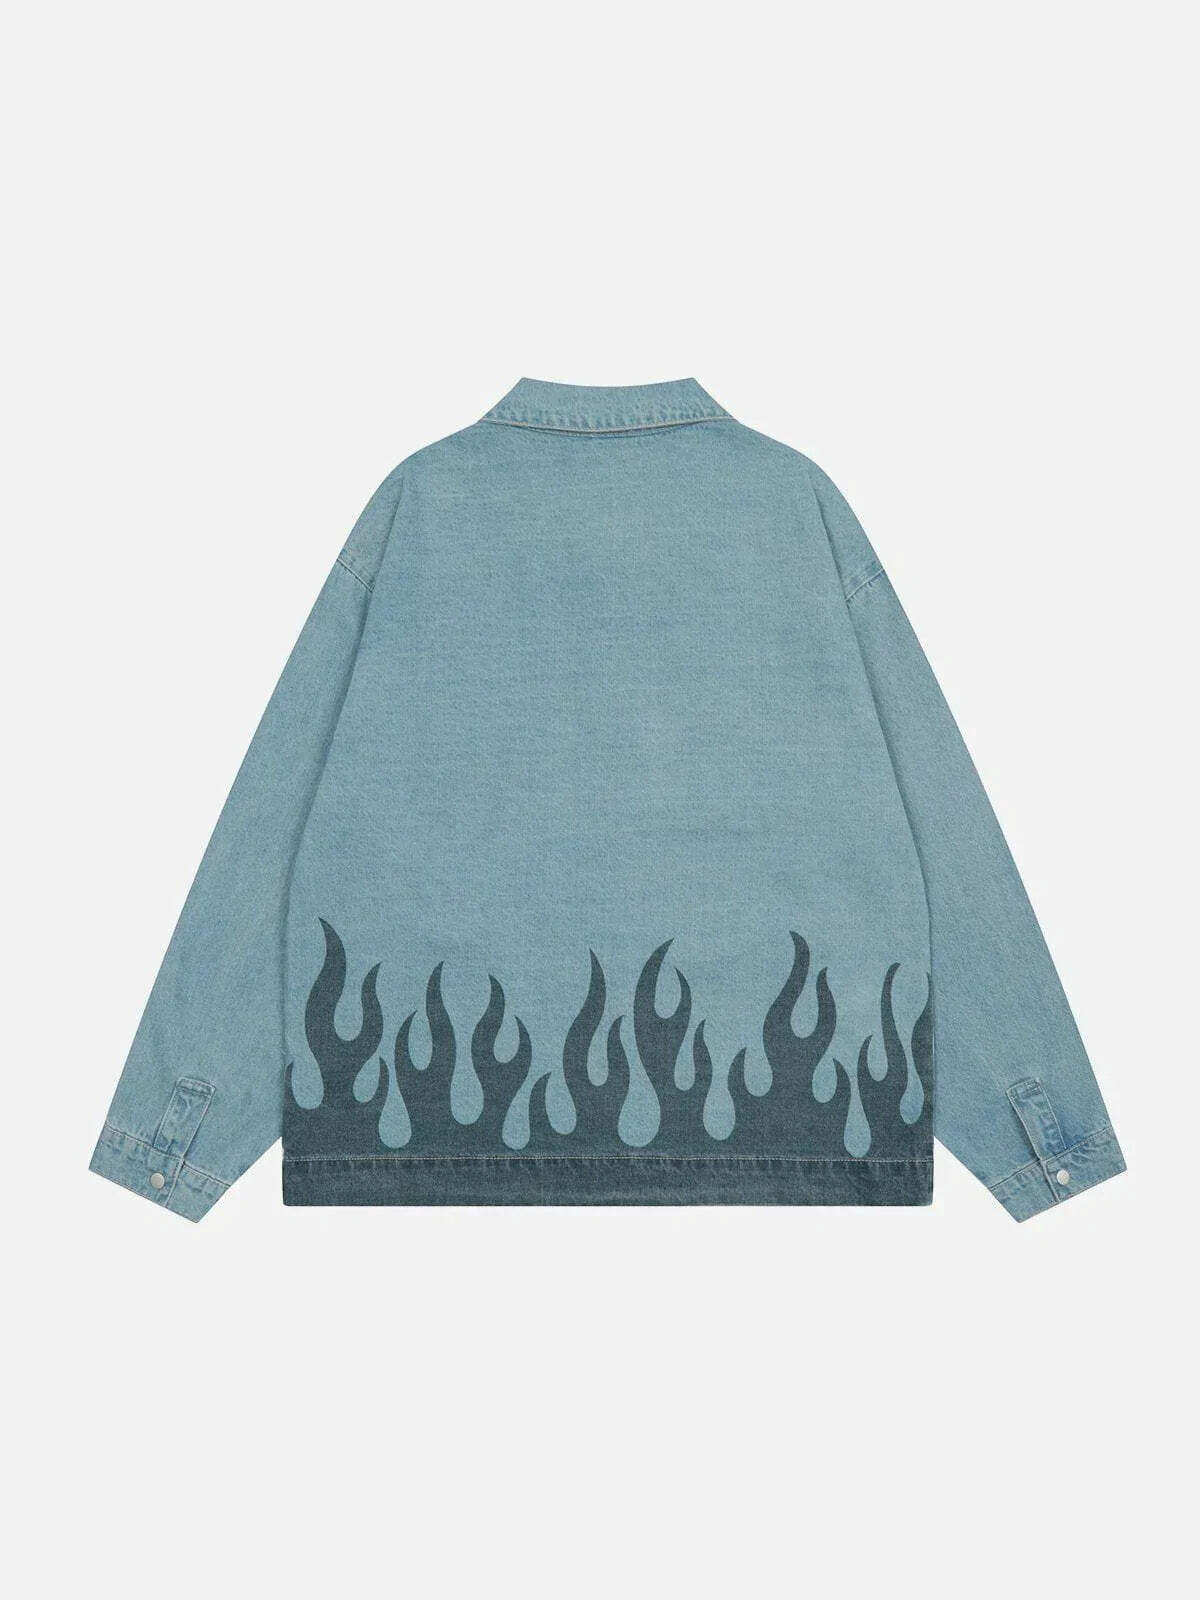 flame print denim jacket edgy & vibrant streetwear 6341